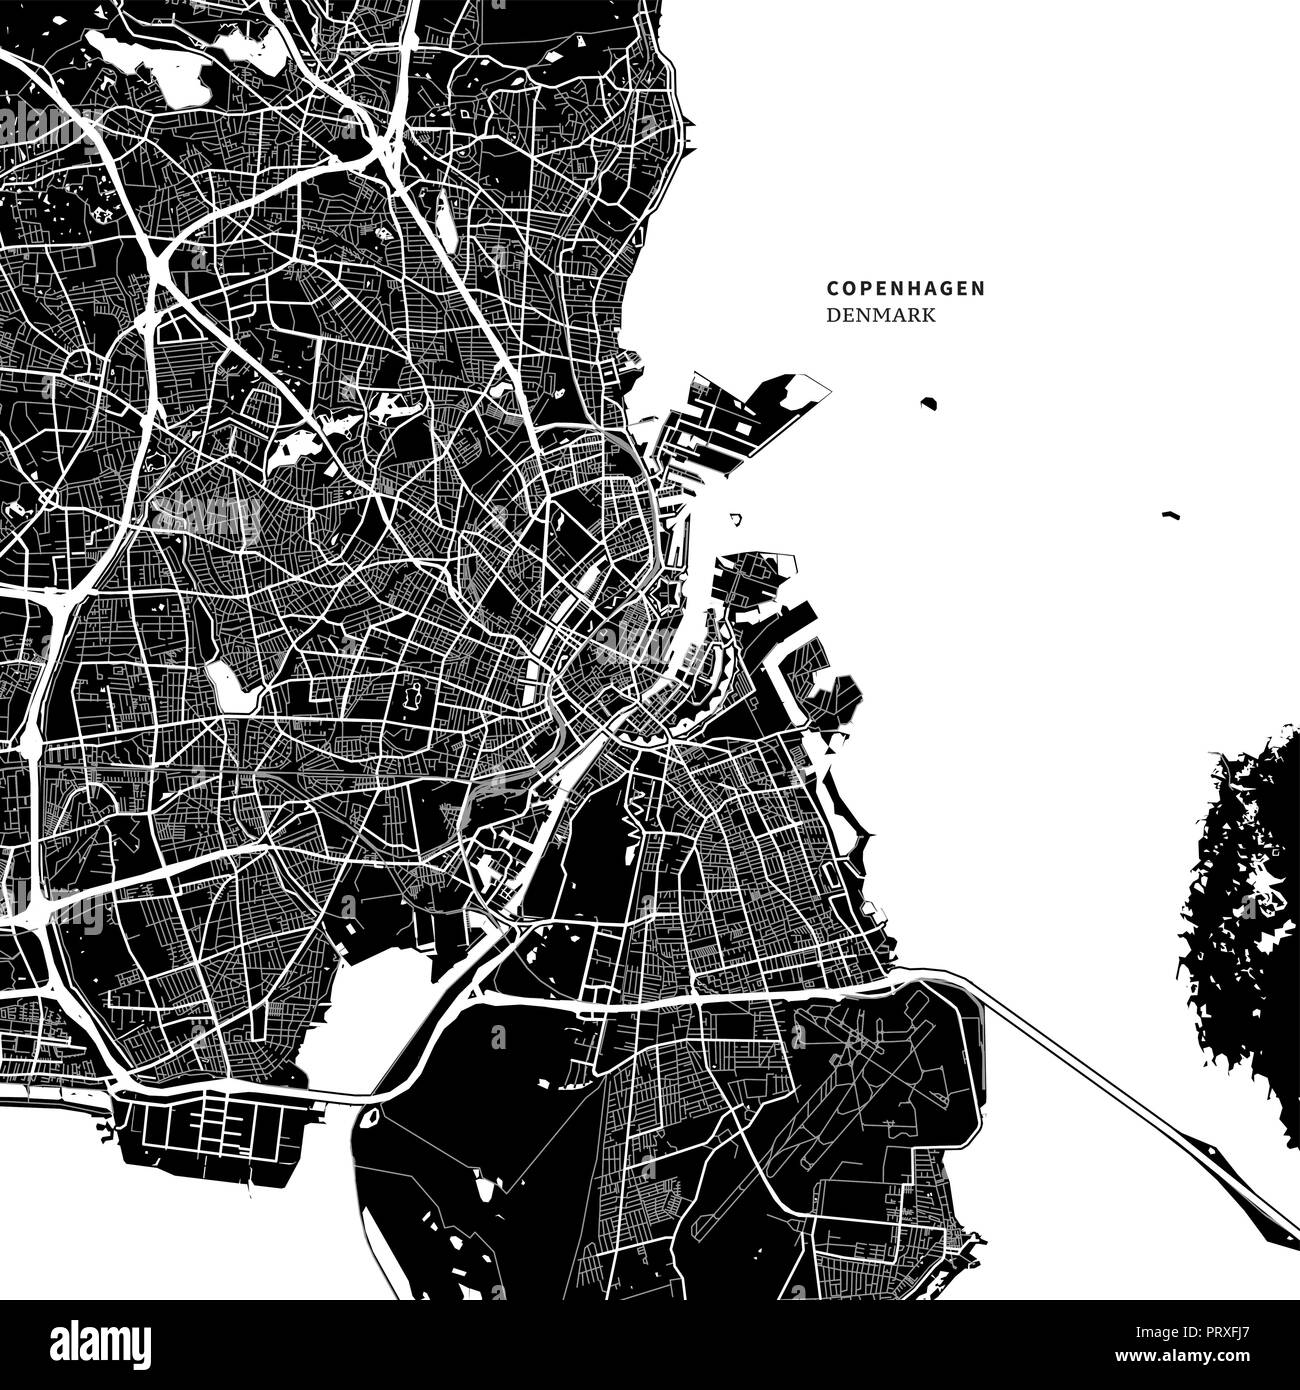 Stadtplan von Kopenhagen, Dänemark mit typischen städtischen Wahrzeichen wie Gebäude, Straßen, Wasserwege und Eisenbahnen sowie kleinere Straßen und Parks Trails. Stock Vektor